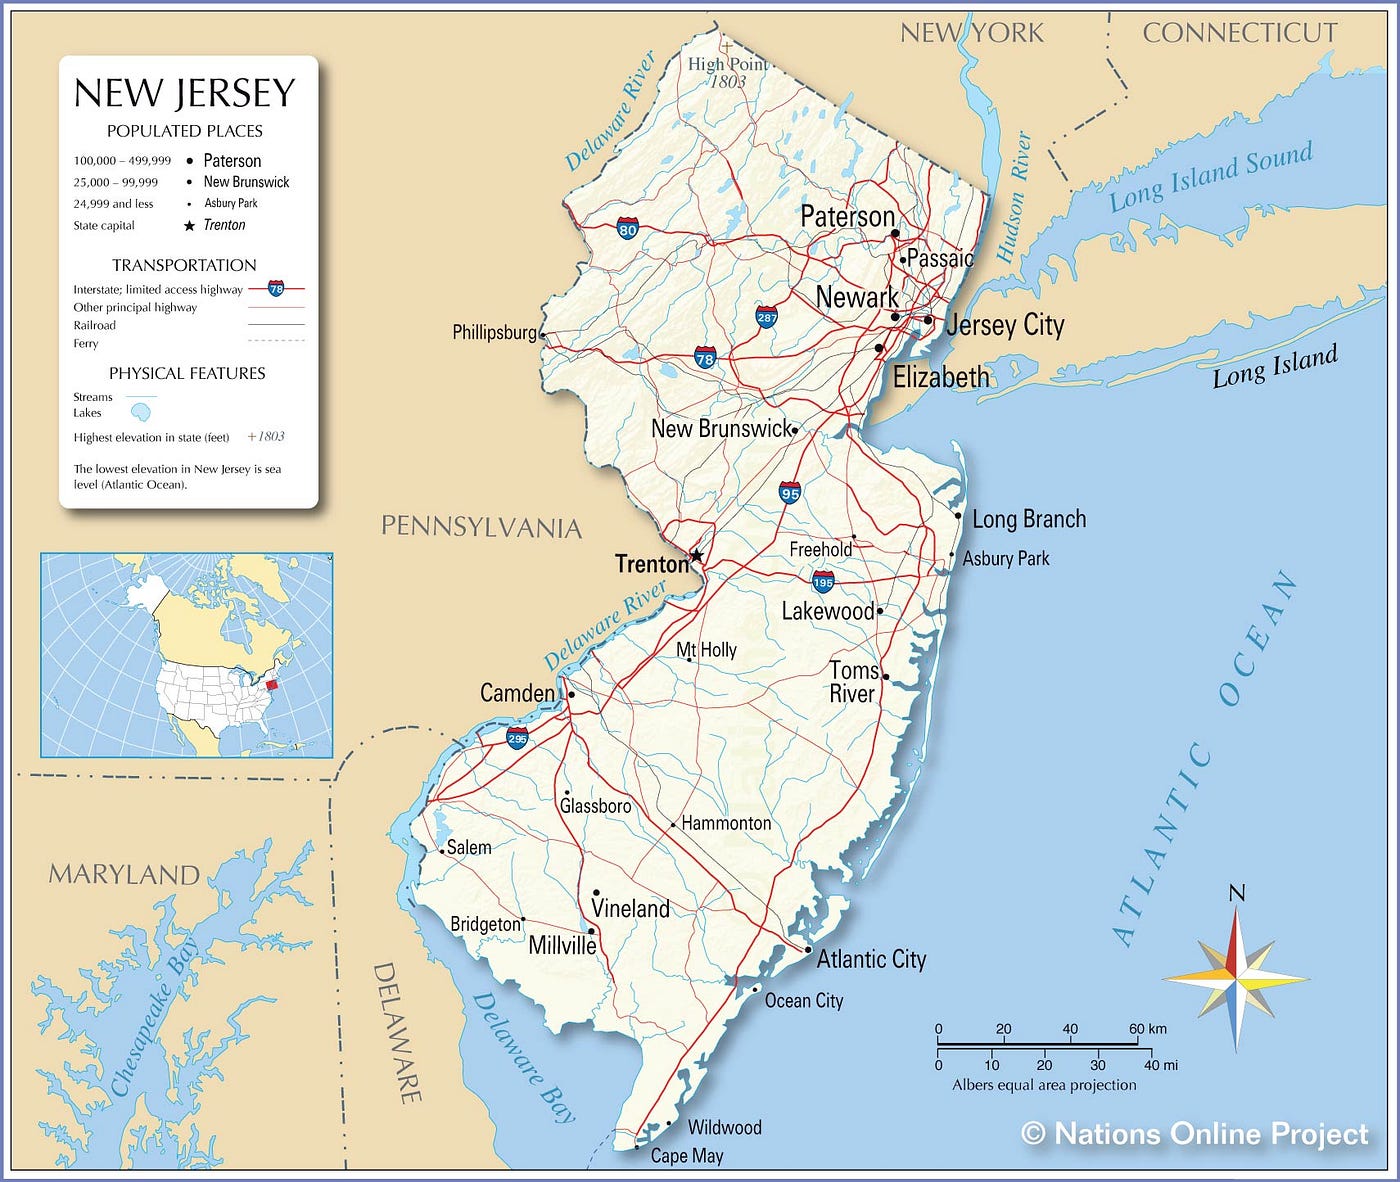 New Jersey - The Shortform - Medium